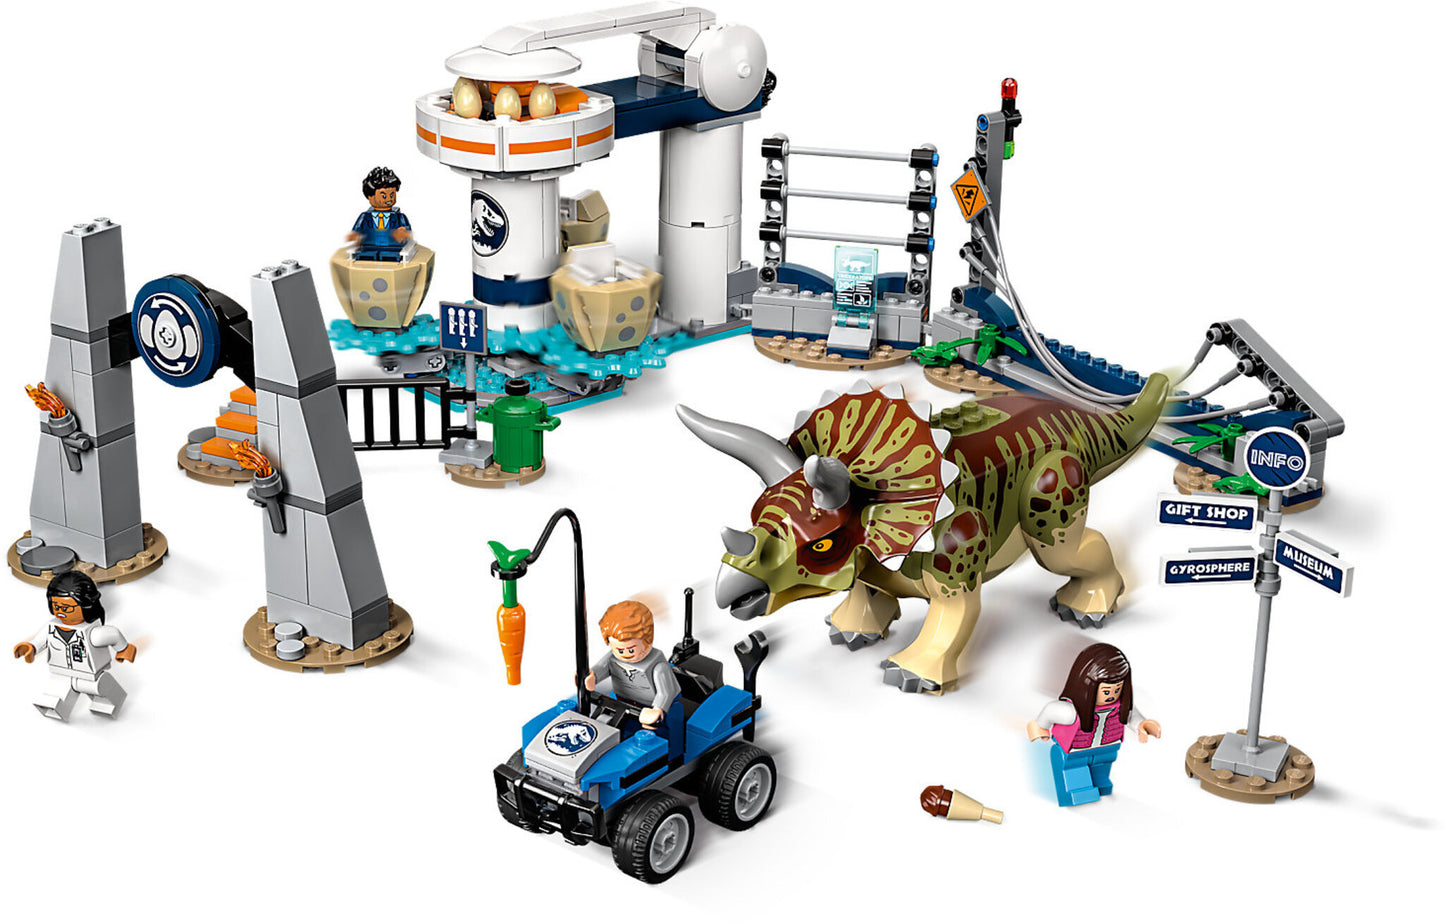 75937 LEGO Jurassic World - L'assalto Del Triceratopo